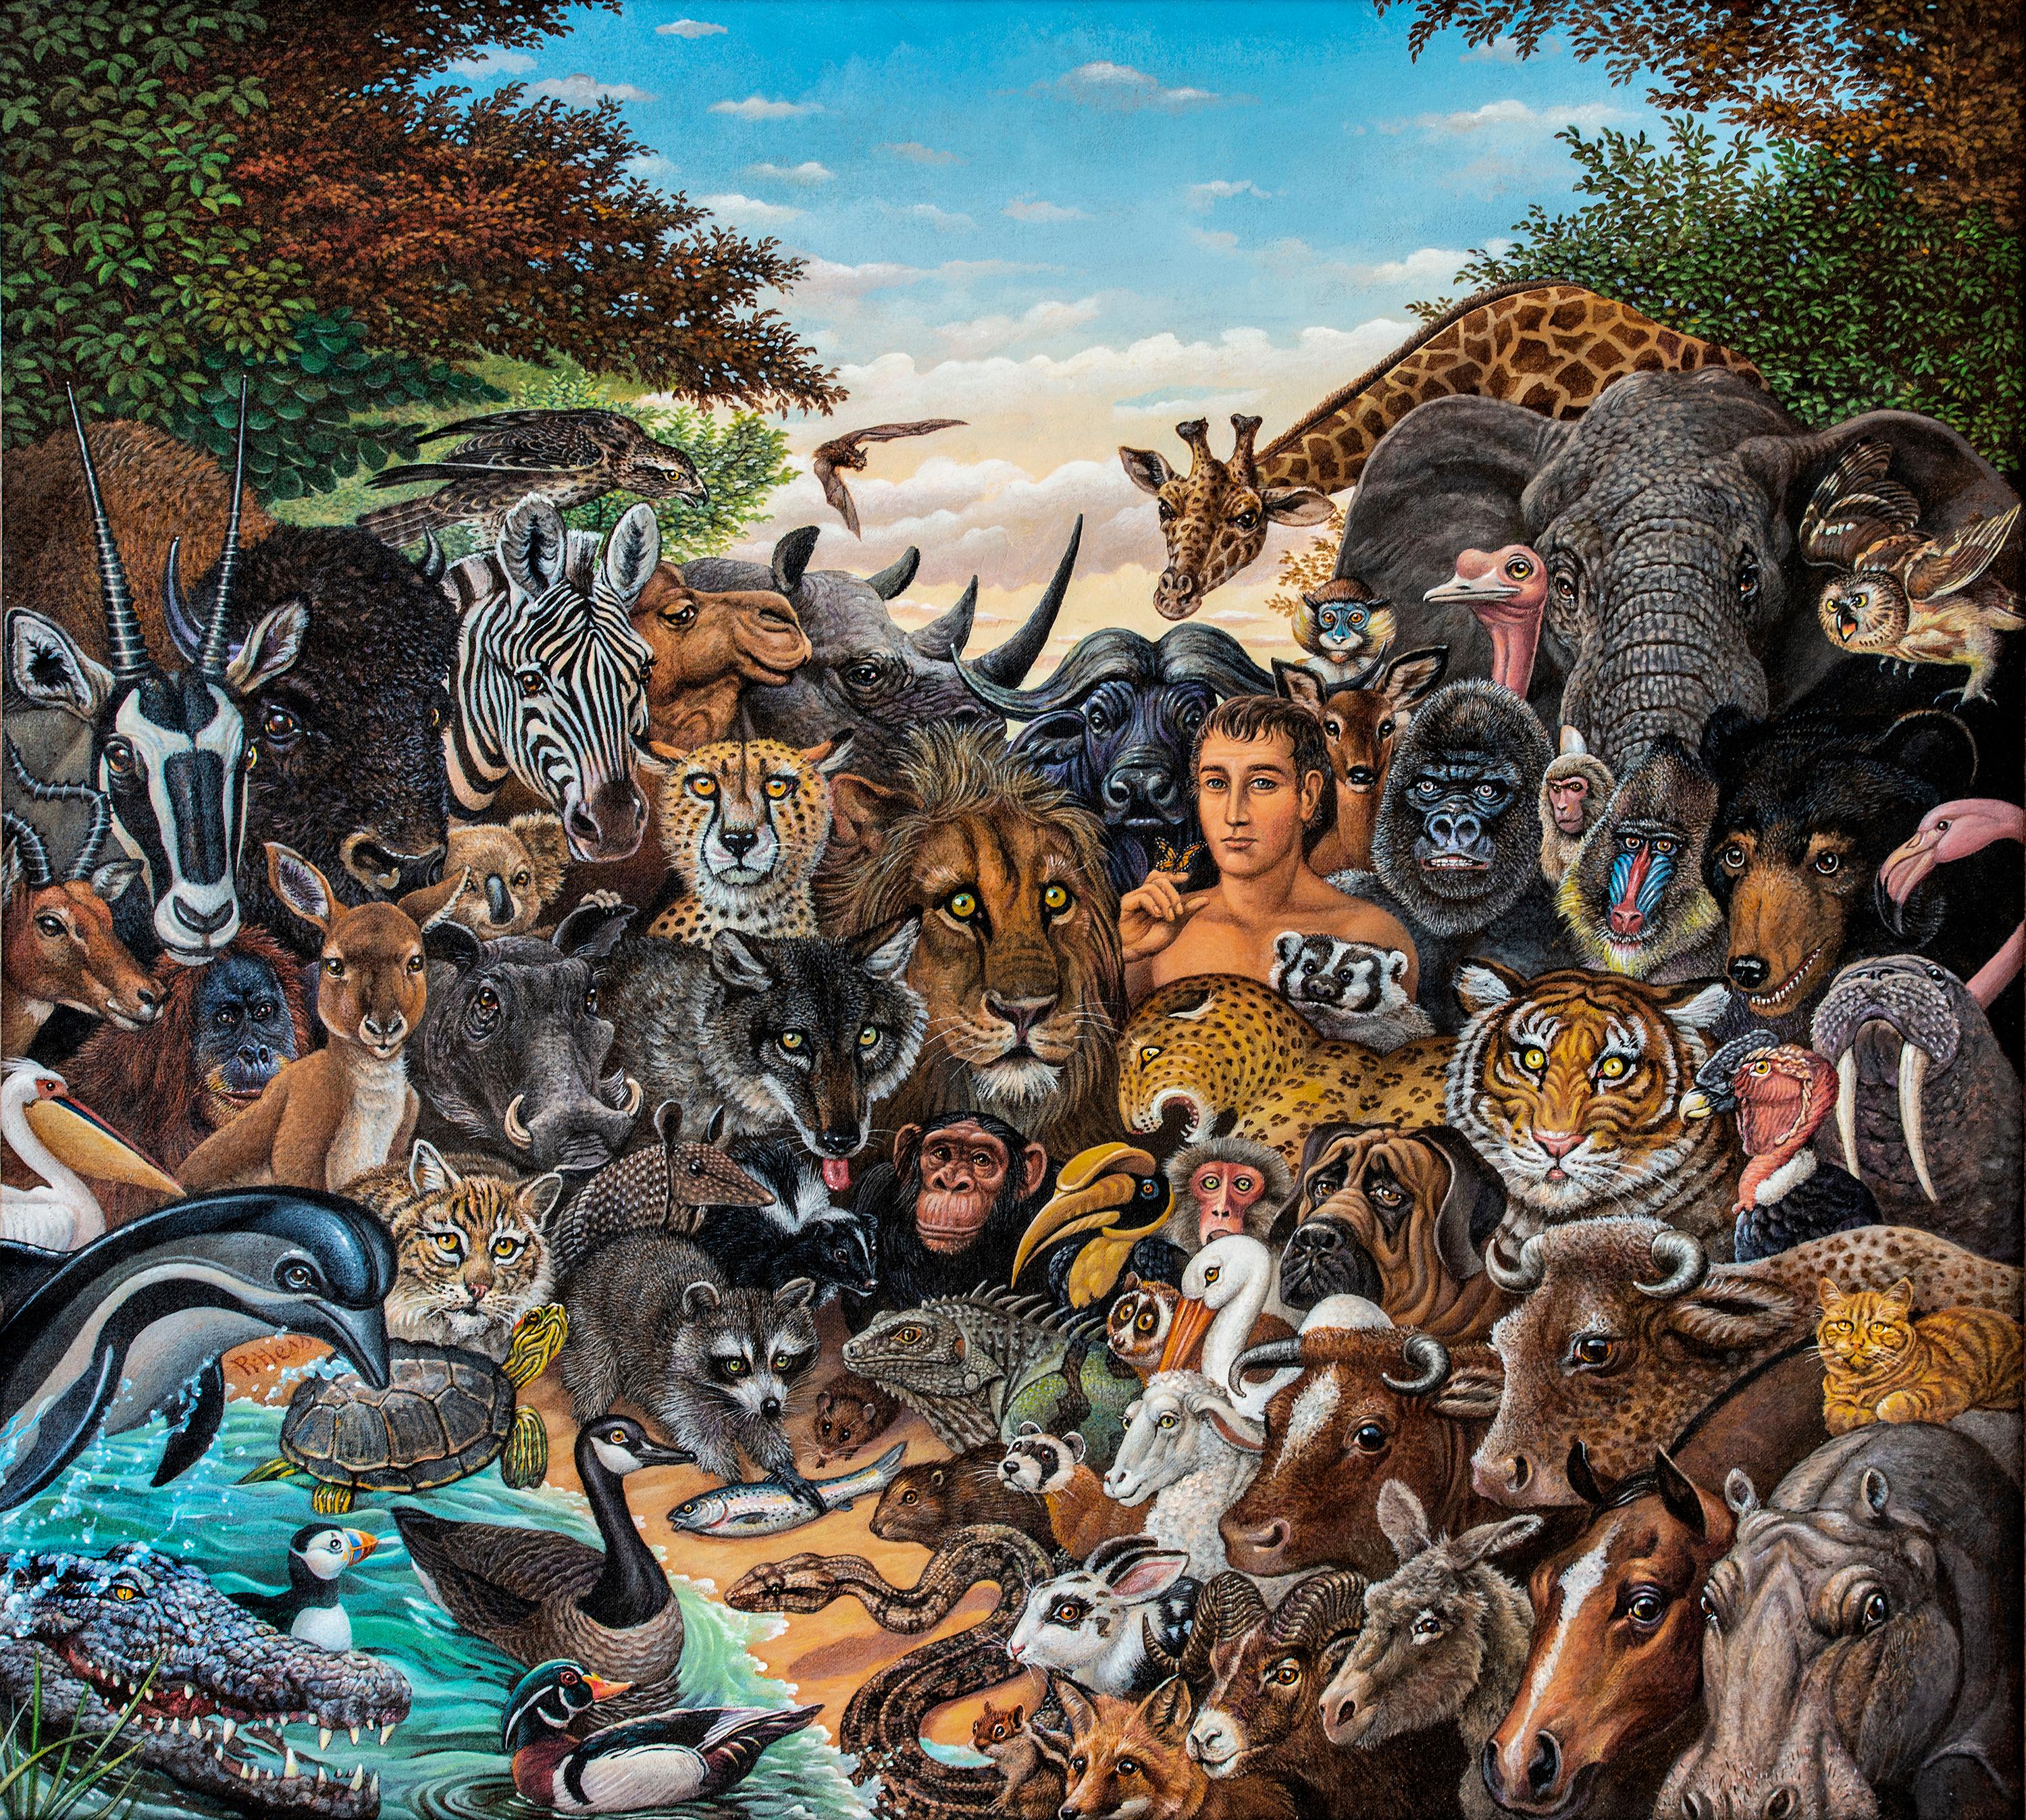 Tierreich, Zebra, Büffel, Löwe, Giraffen, Elefant, Affen, Tiger  Gorilla (Braun), Portrait Painting, von Richard Hess